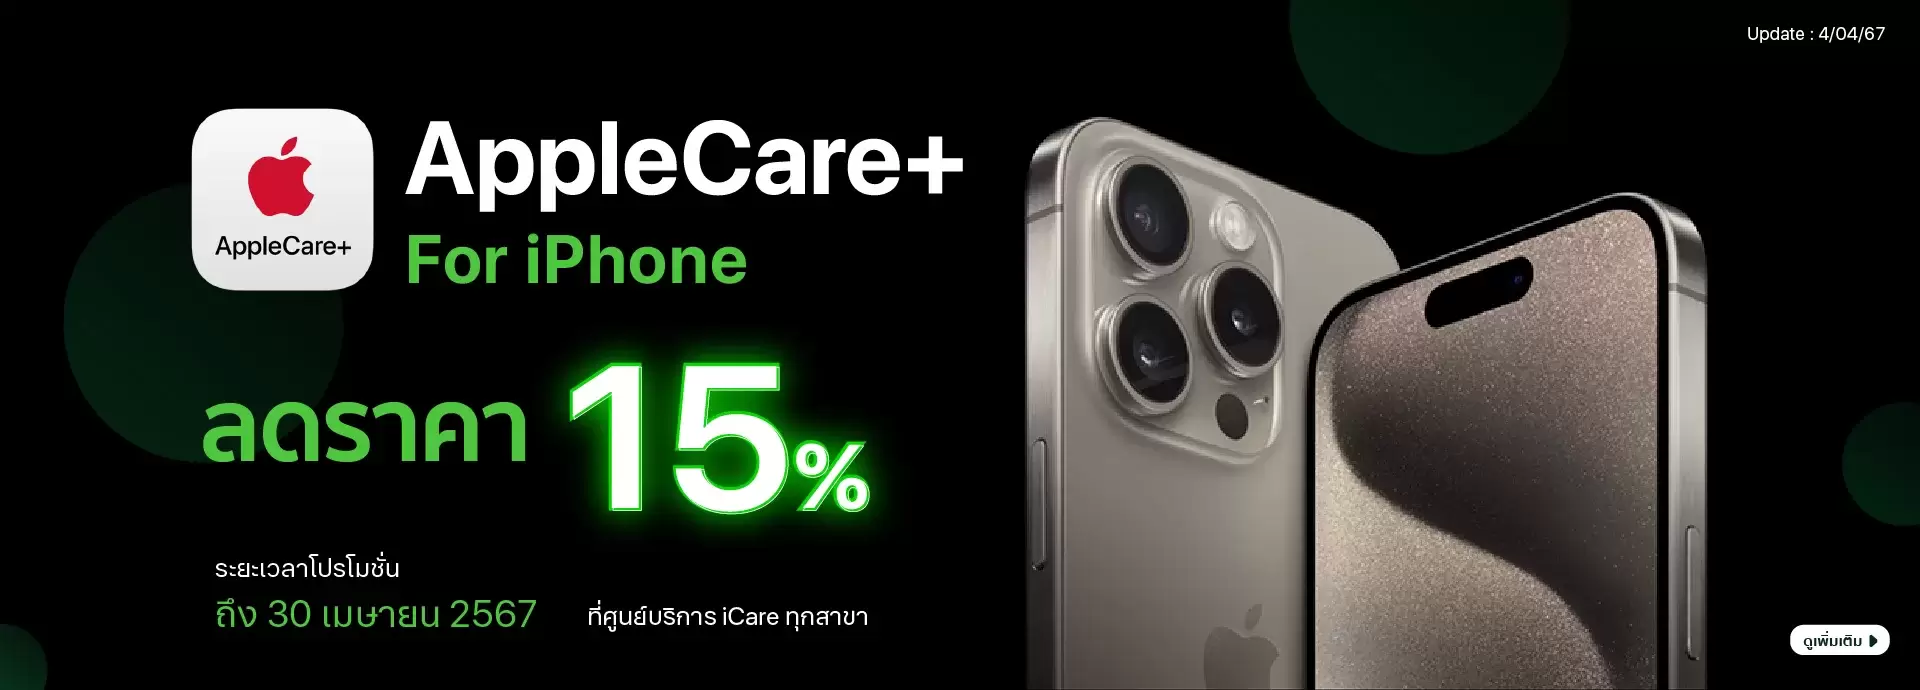 AppleCare+ iPhone ลดราคา 15% ทุกรุ่น ที่ศูนย์บริการ iCare